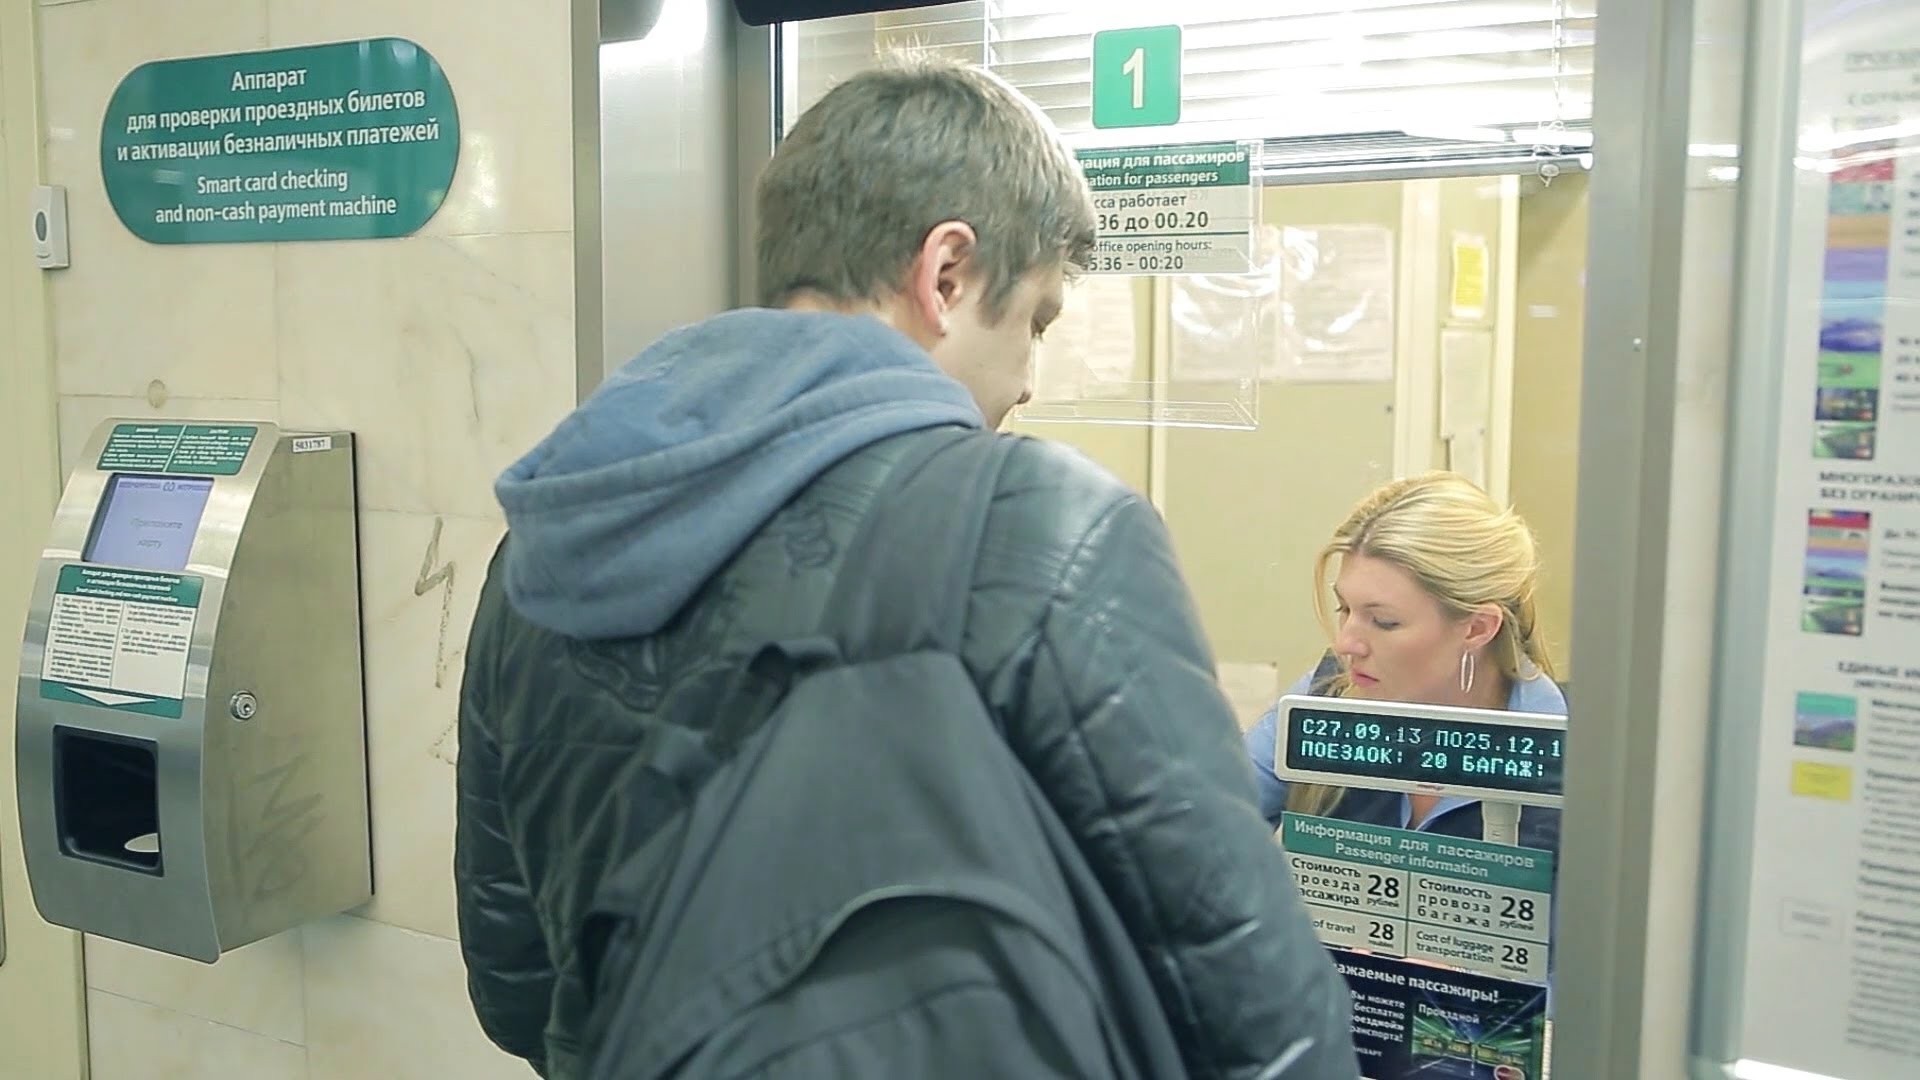 В метро Петербурга планируют установить емкости для чеков, которые пассажиры бросают на пол